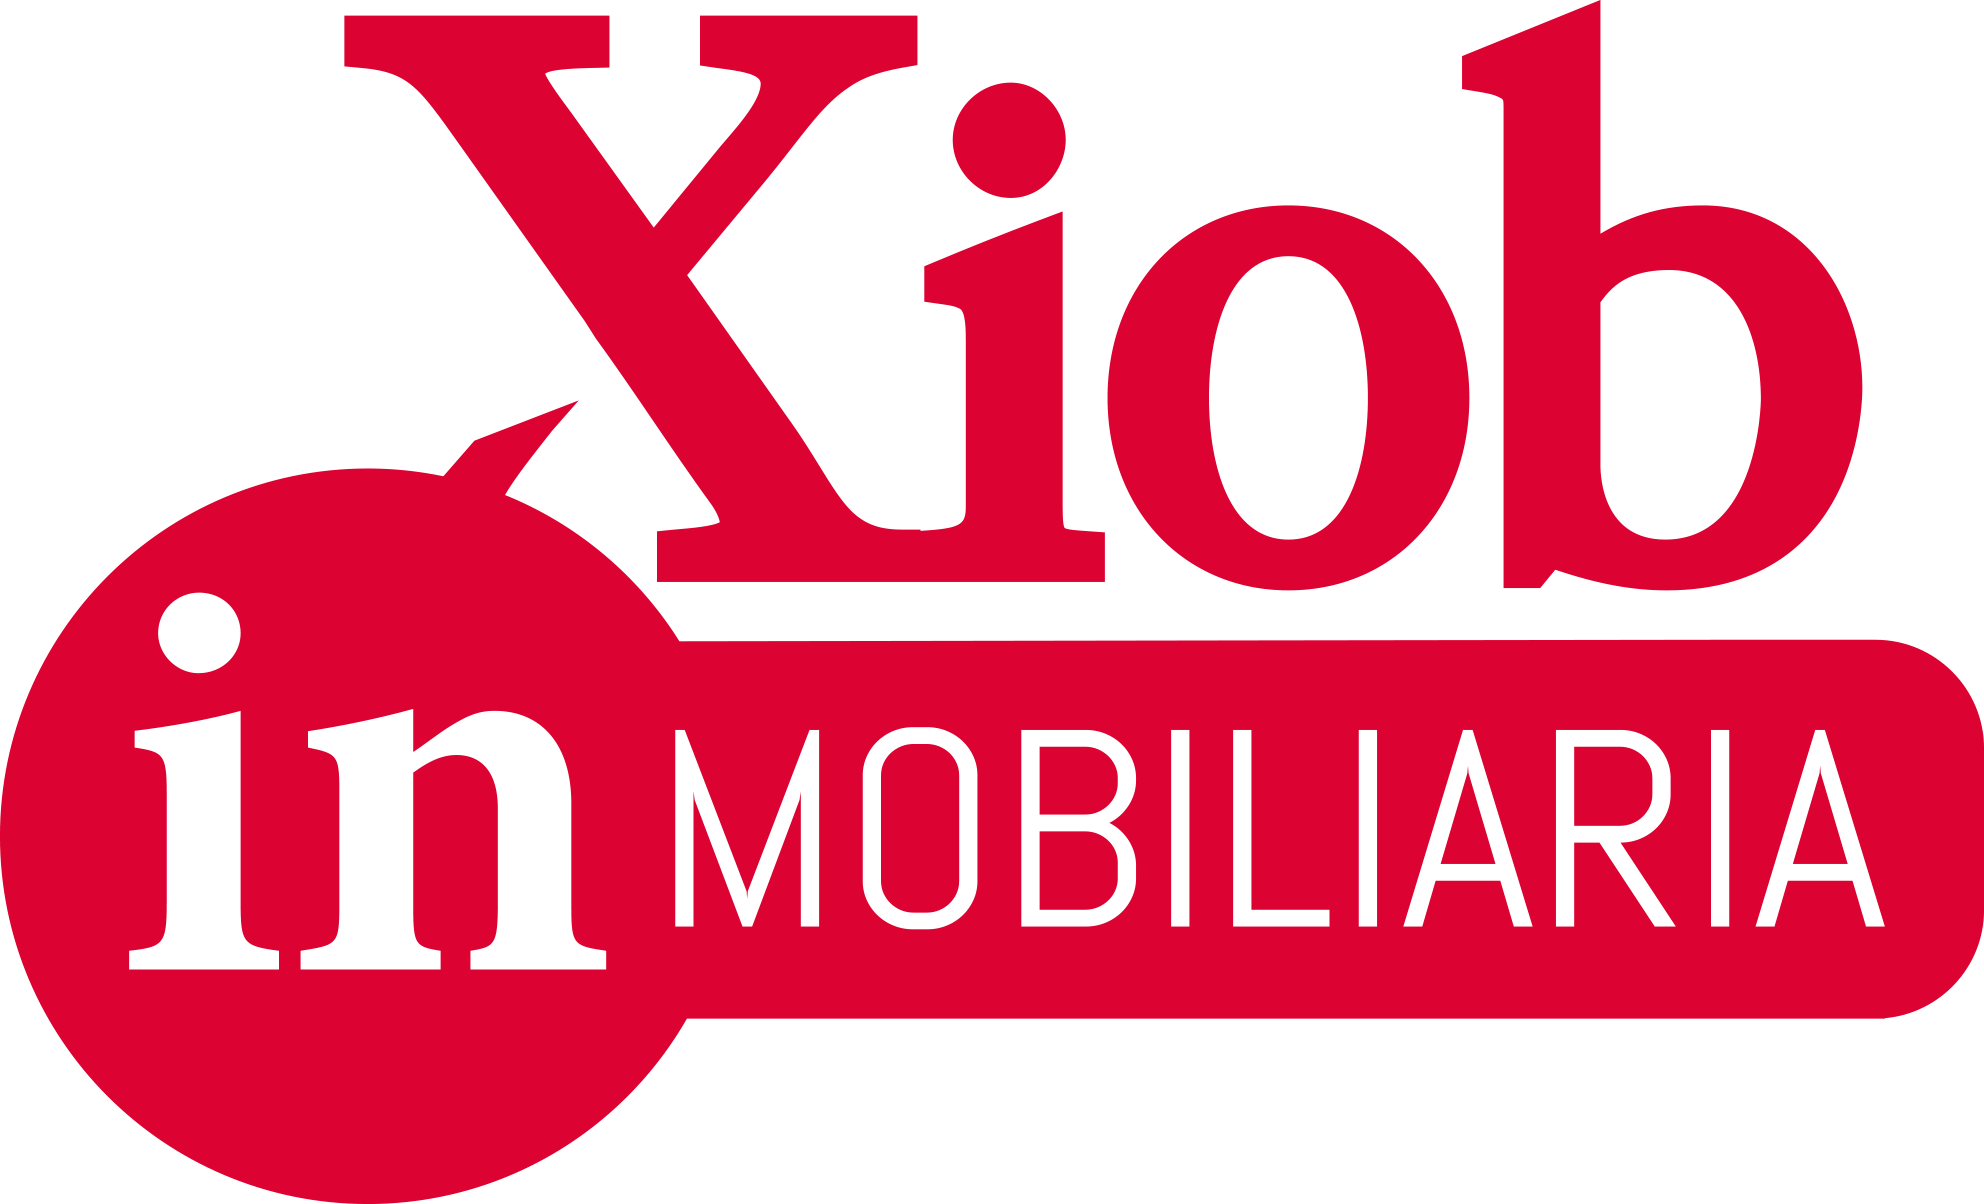 Logo Xiob Inmobiliaria Valencia